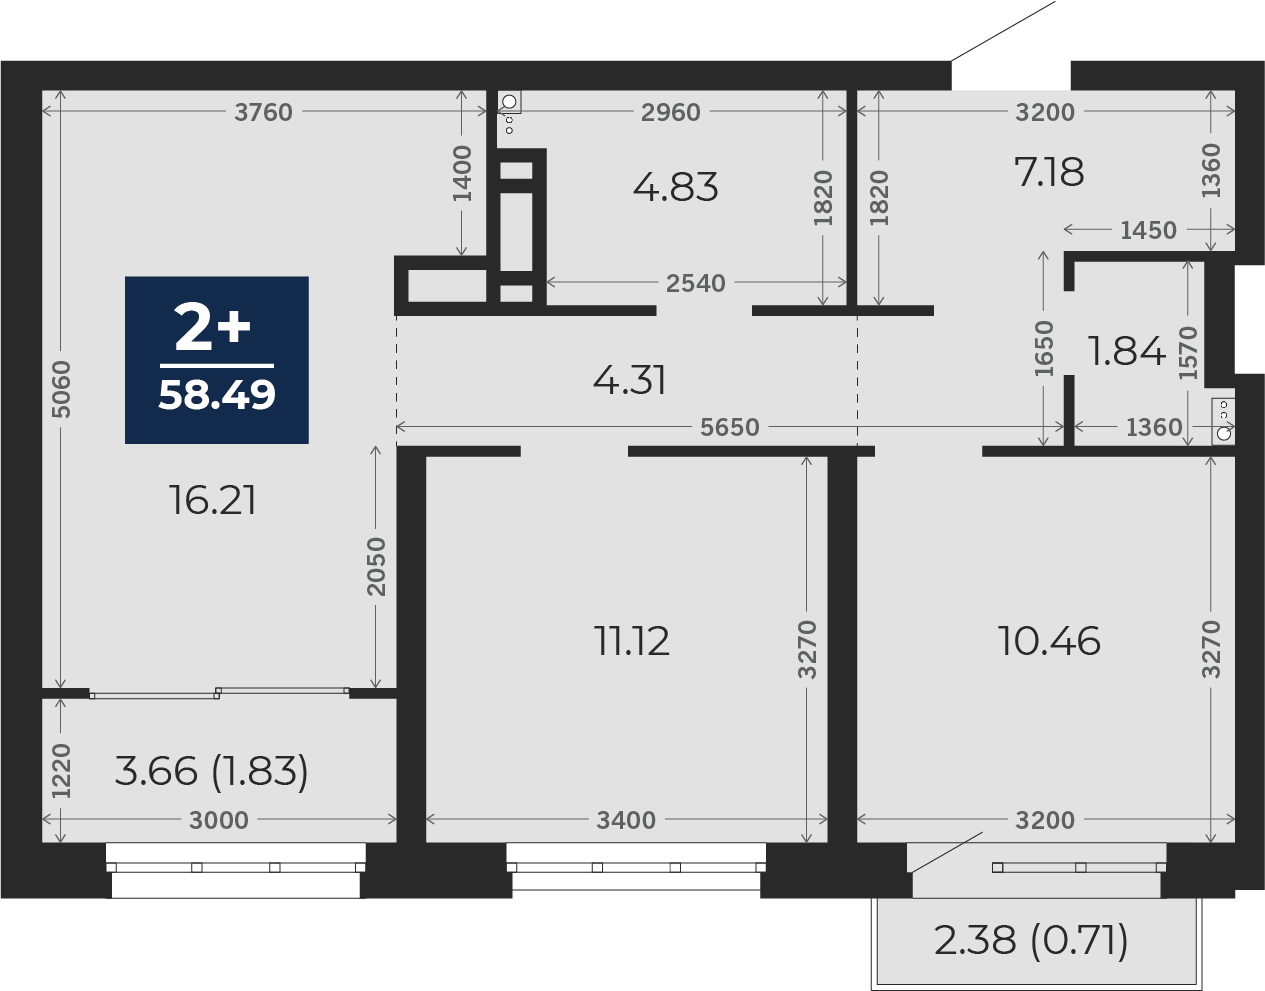 Квартира № 372, 2-комнатная, 58.49 кв. м, 5 этаж